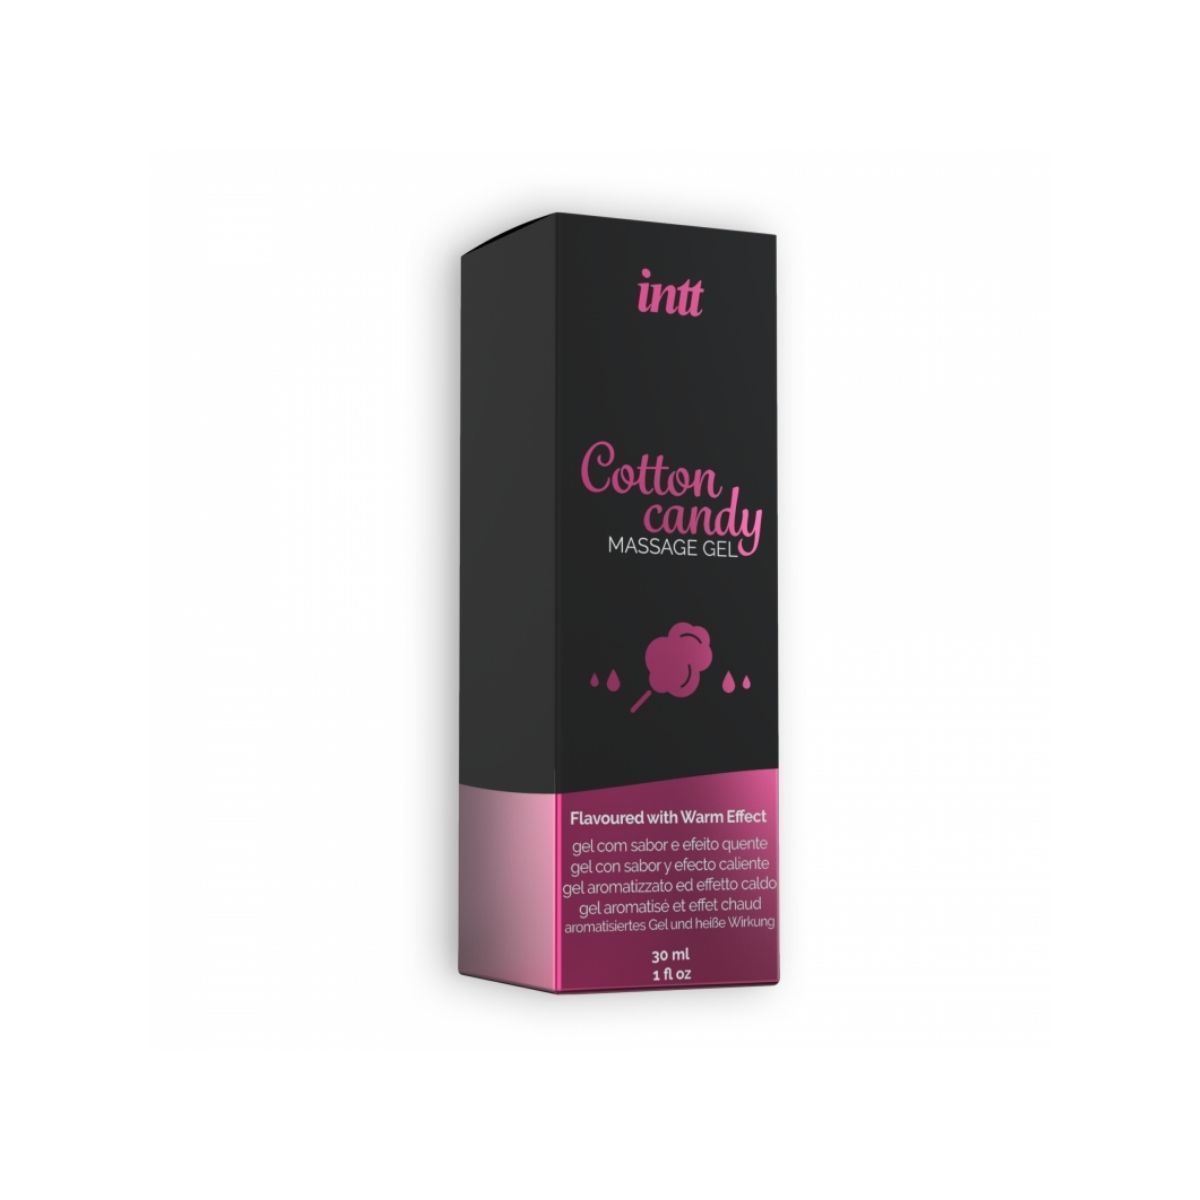 INTT Cotton Candy 棉花糖味 可食用温感按摩凝膠 30 毫升 按摩油 購買